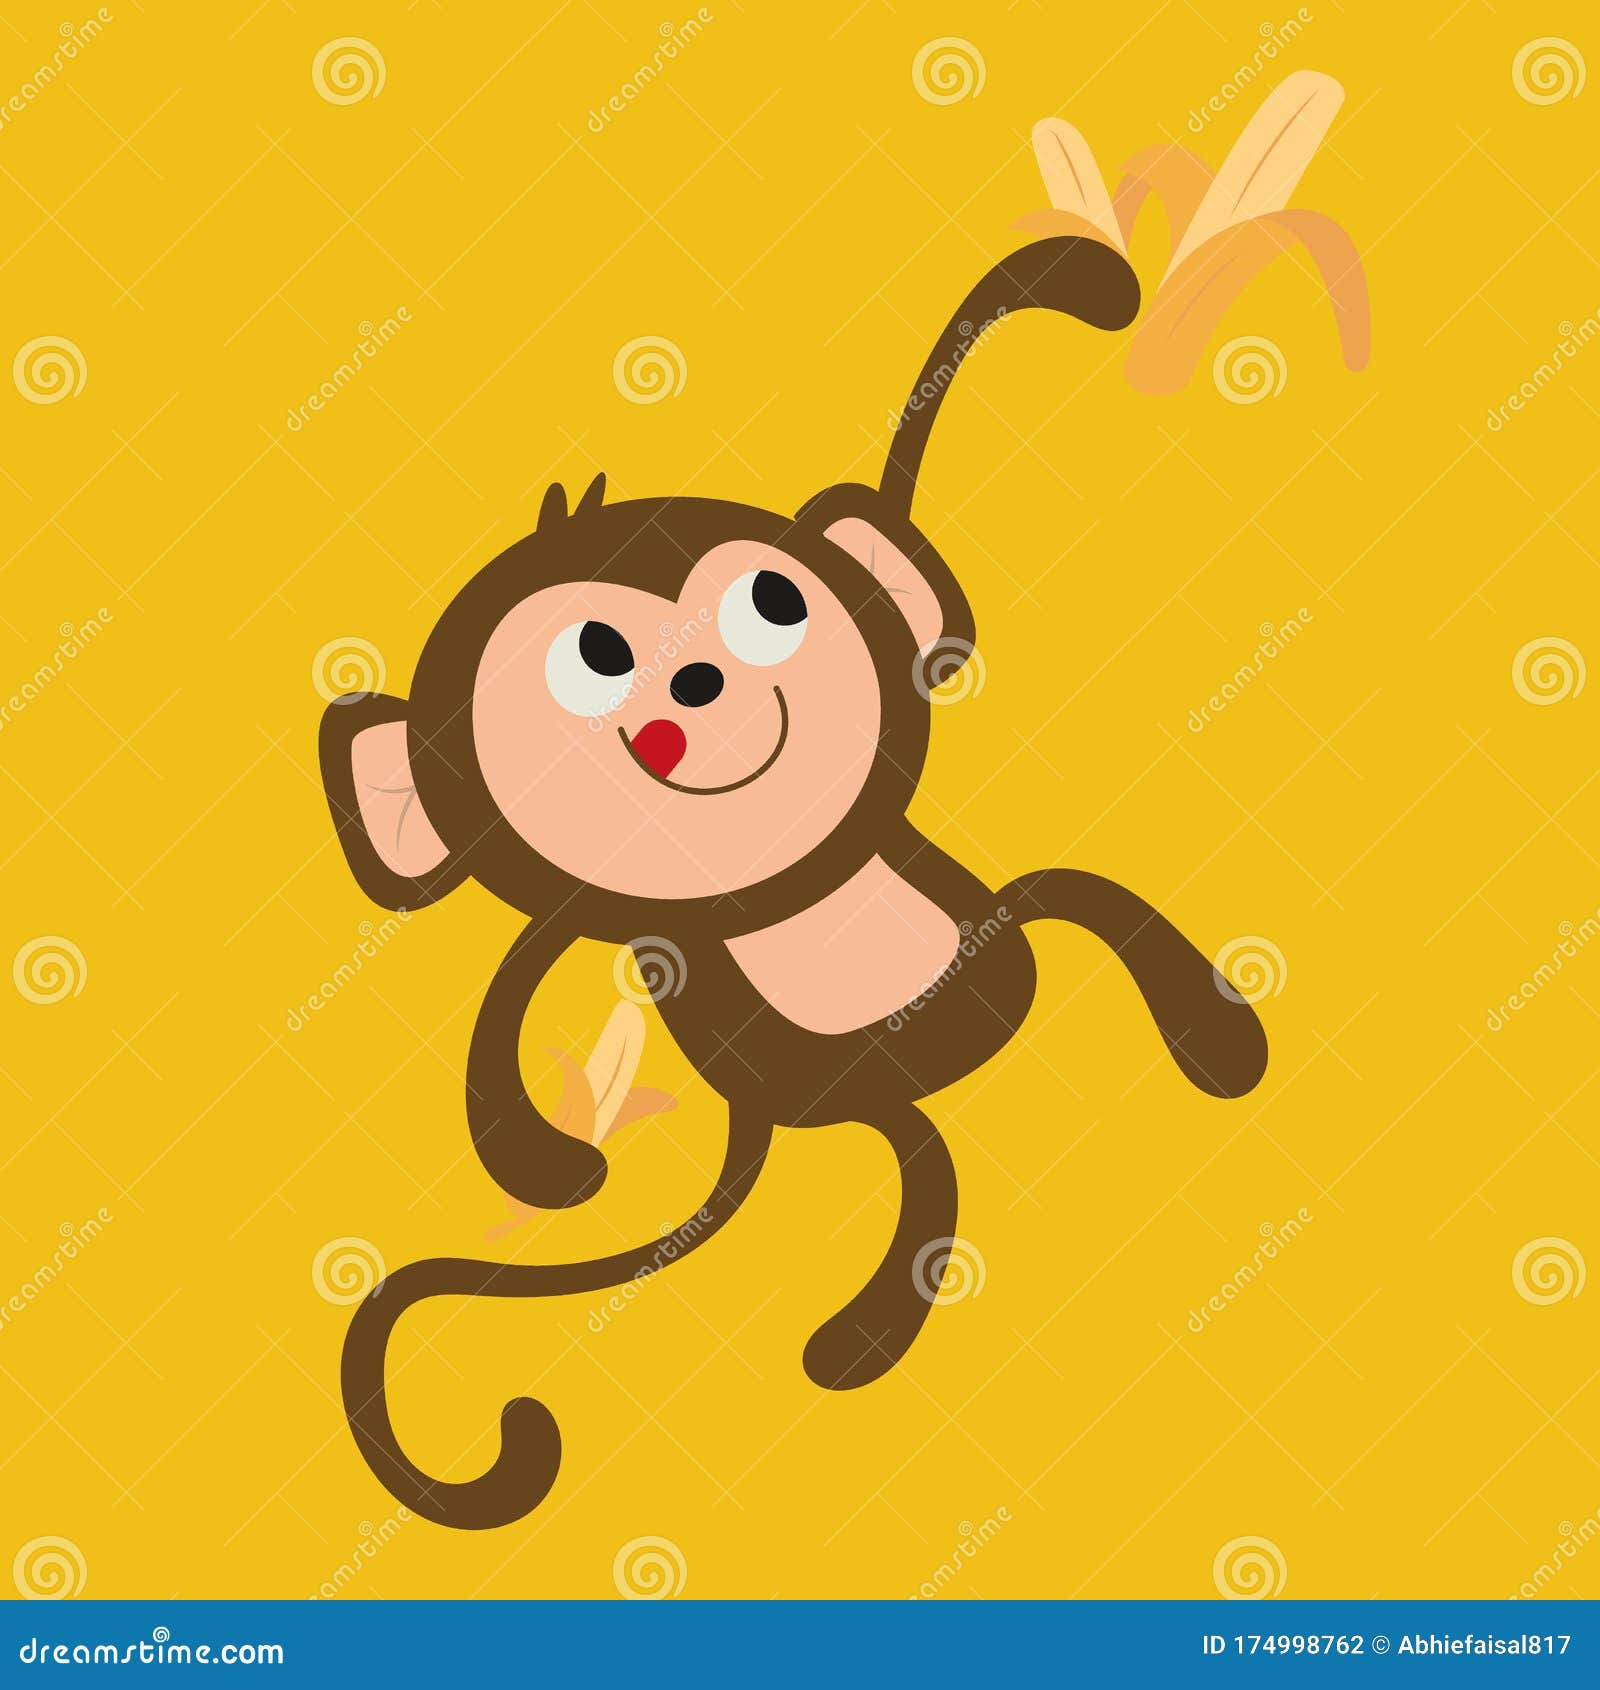 Chắc hẳn không ai có thể cưỡng lại được sự dễ thương của một chú khỉ đáng yêu! Hình ảnh của những chú khỉ này sẽ khiến bạn cảm thấy ấm áp và đáng yêu.